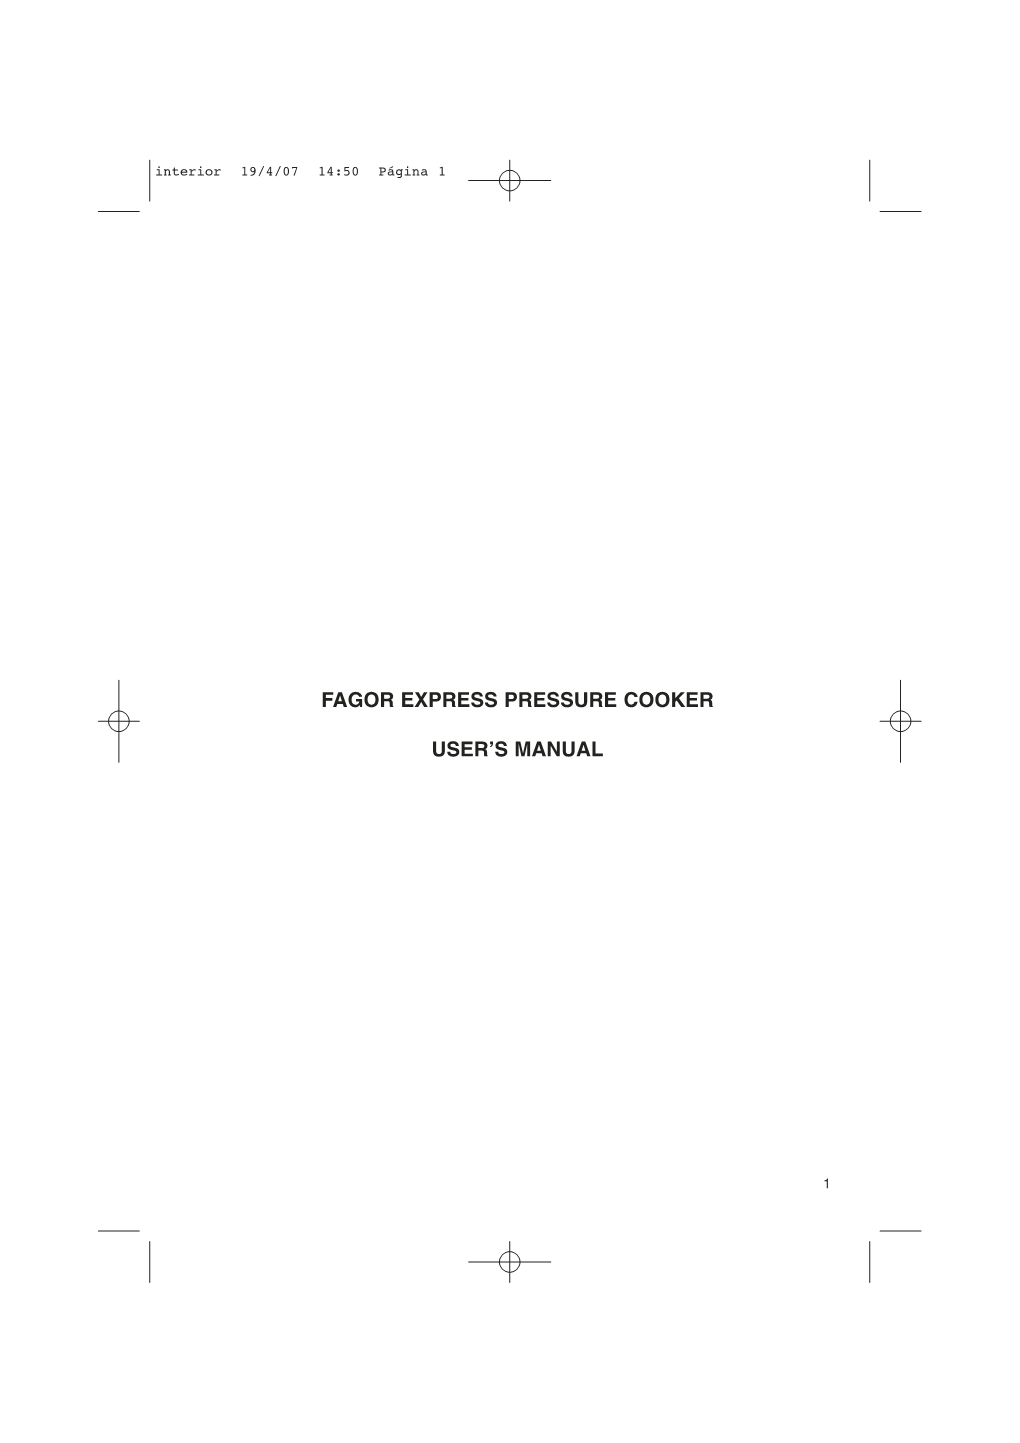 Fagor Express Pressure Cooker User's Manual